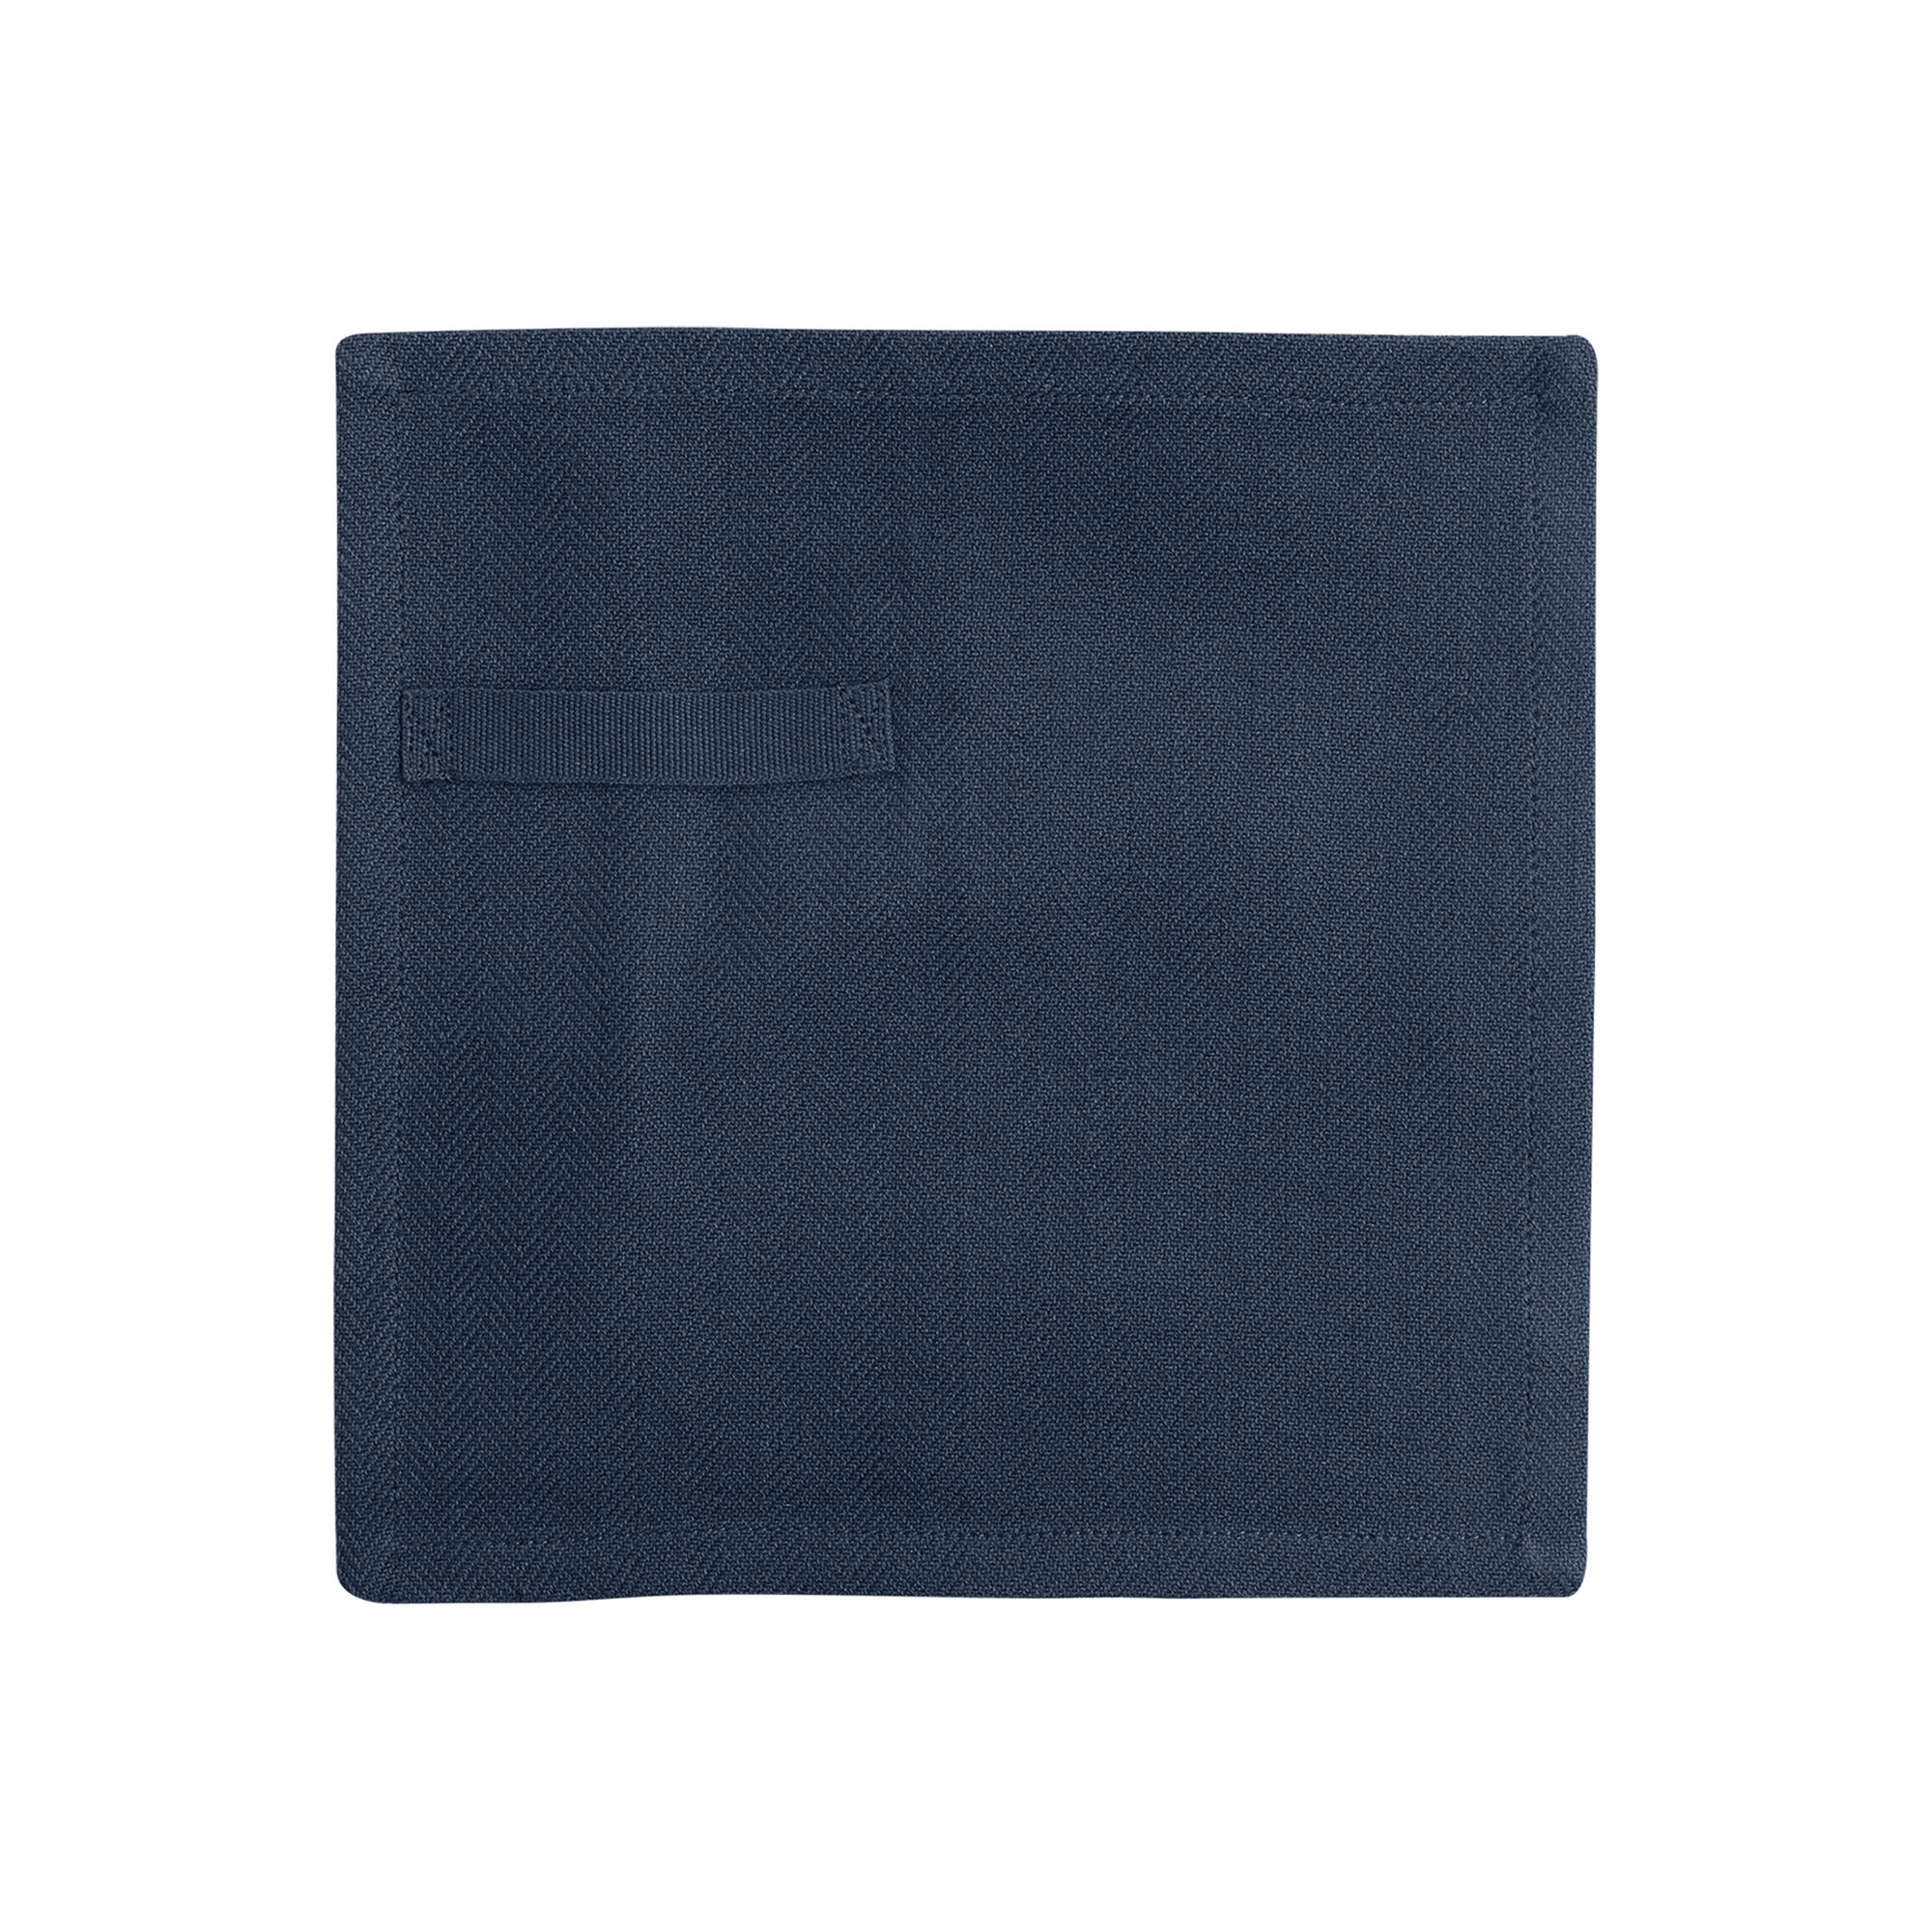 La serviette de tous les jours Company Organic, bleu foncé